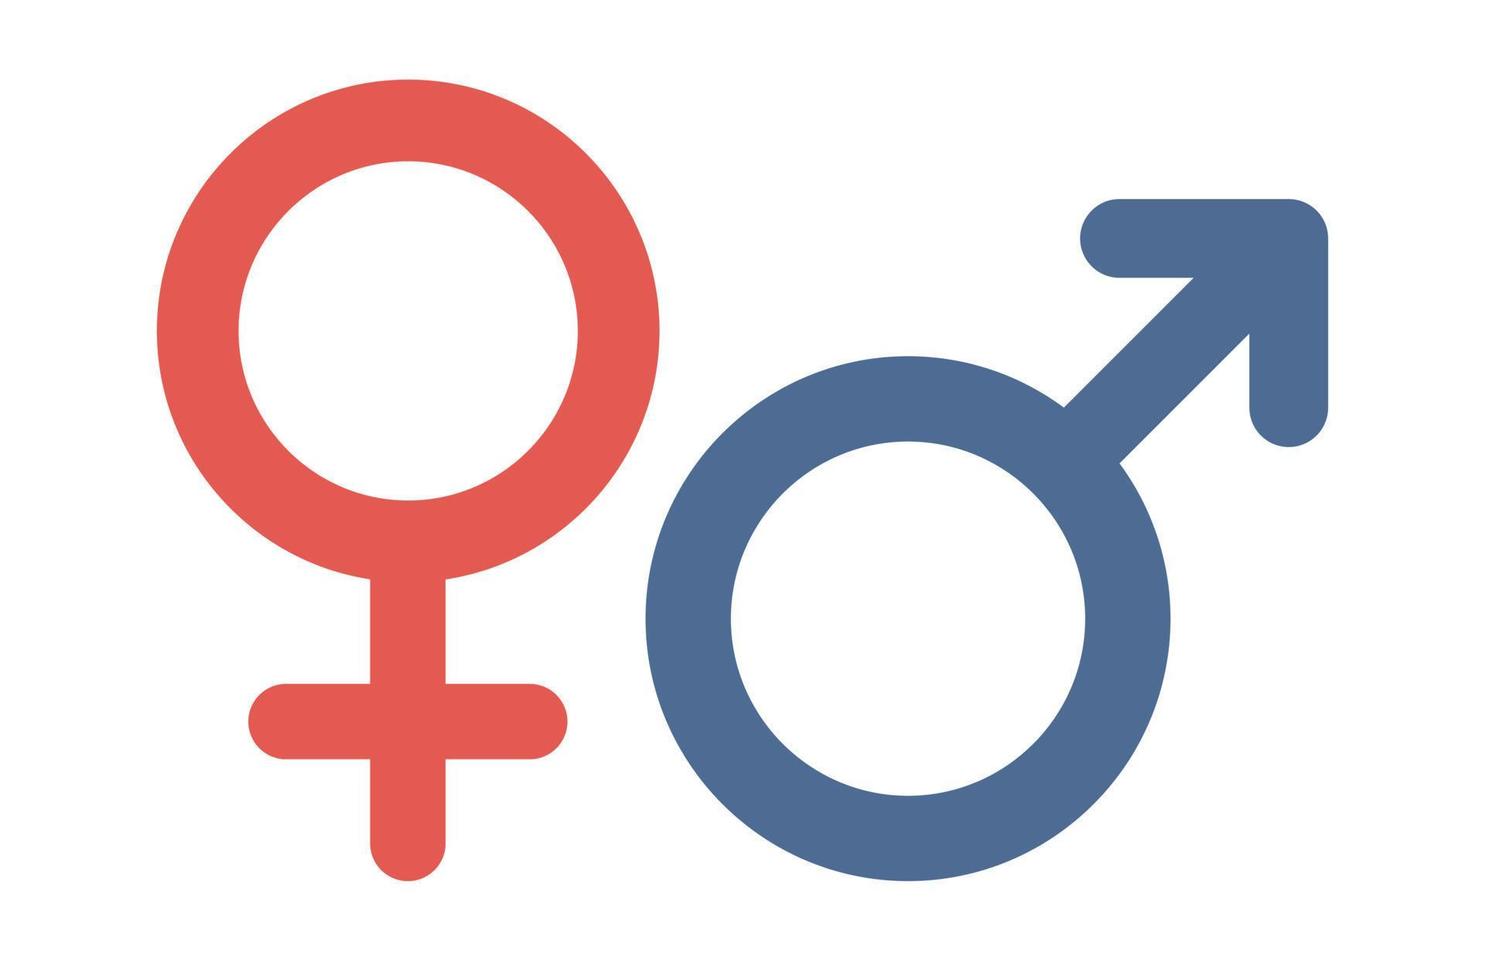 le sexe symbole. Masculin et femelle signe. vecteur plat illustration